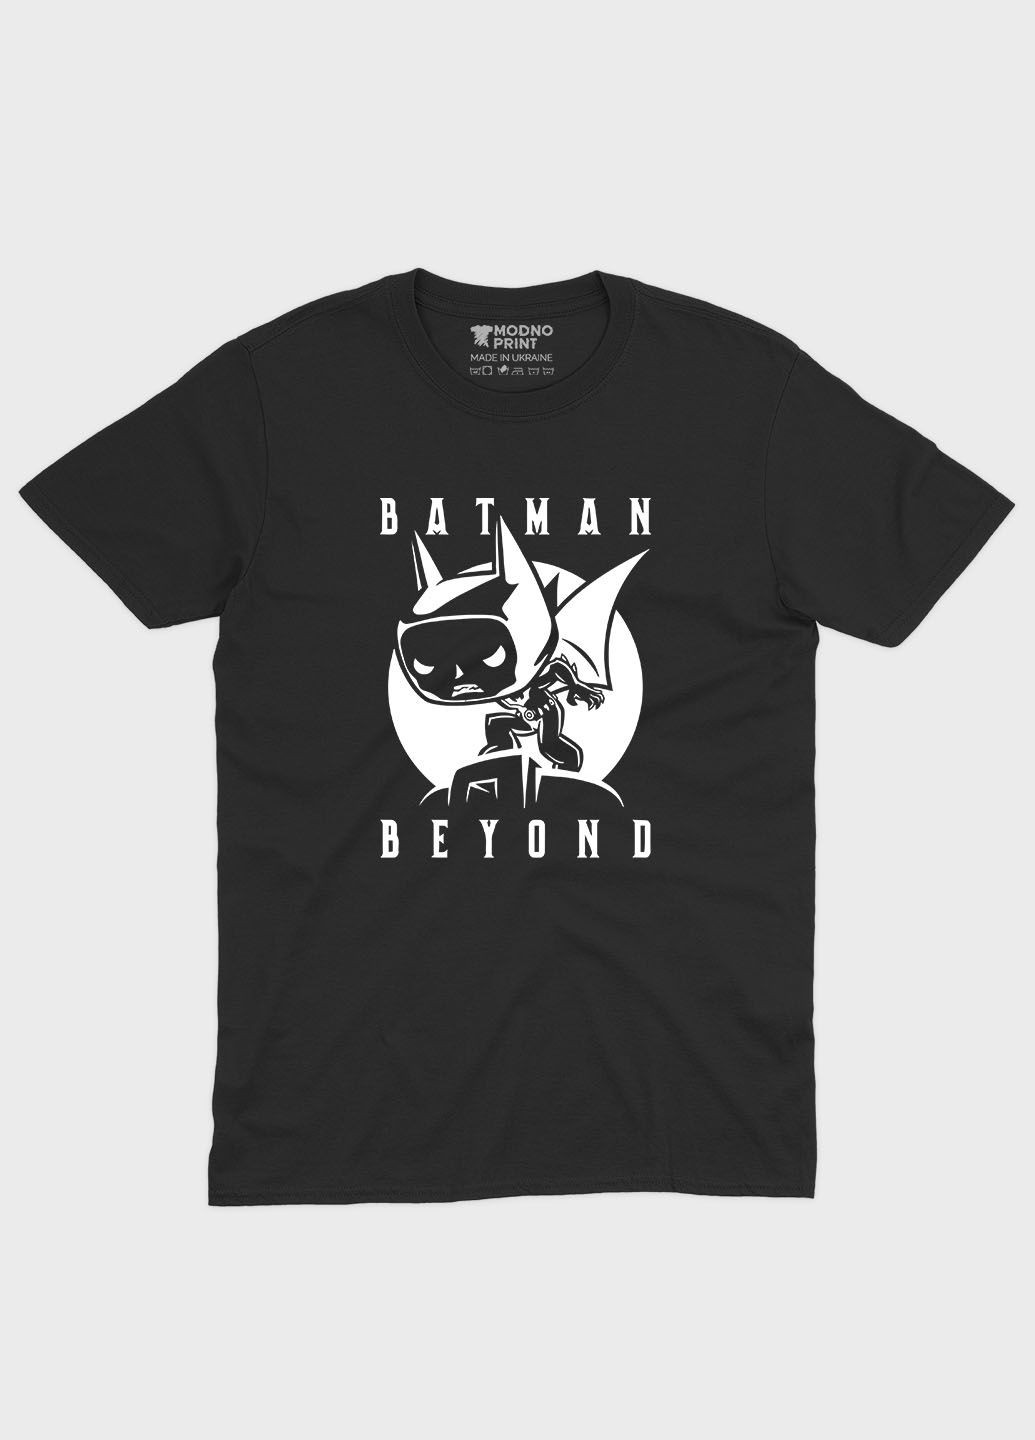 Чорна демісезонна футболка для хлопчика з принтом супергероя - бетмен (ts001-1-bl-006-003-040-b) Modno